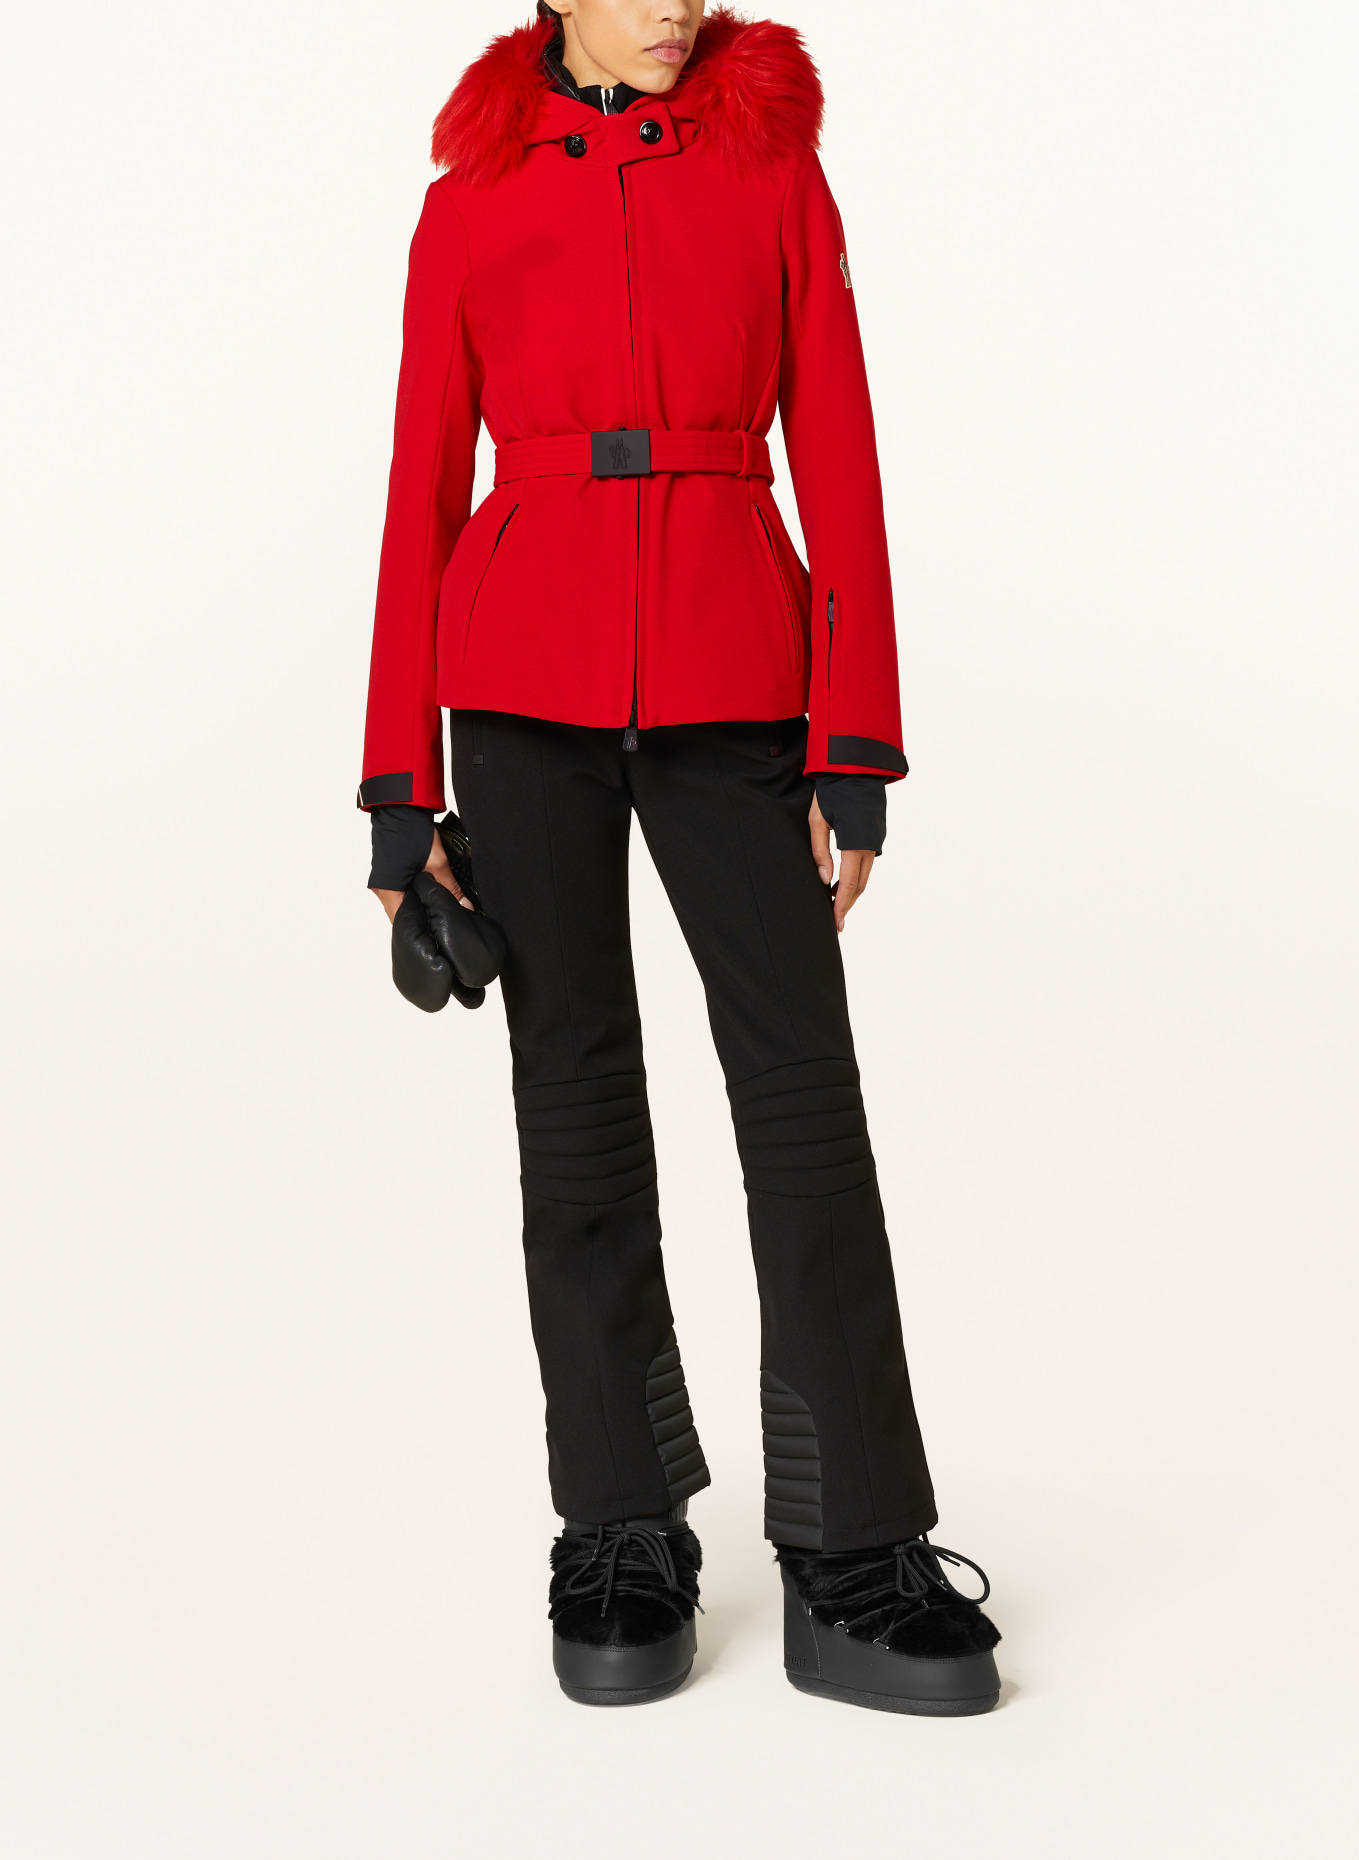 MONCLER GRENOBLE Ski jacket, Color: RED (Image 2)